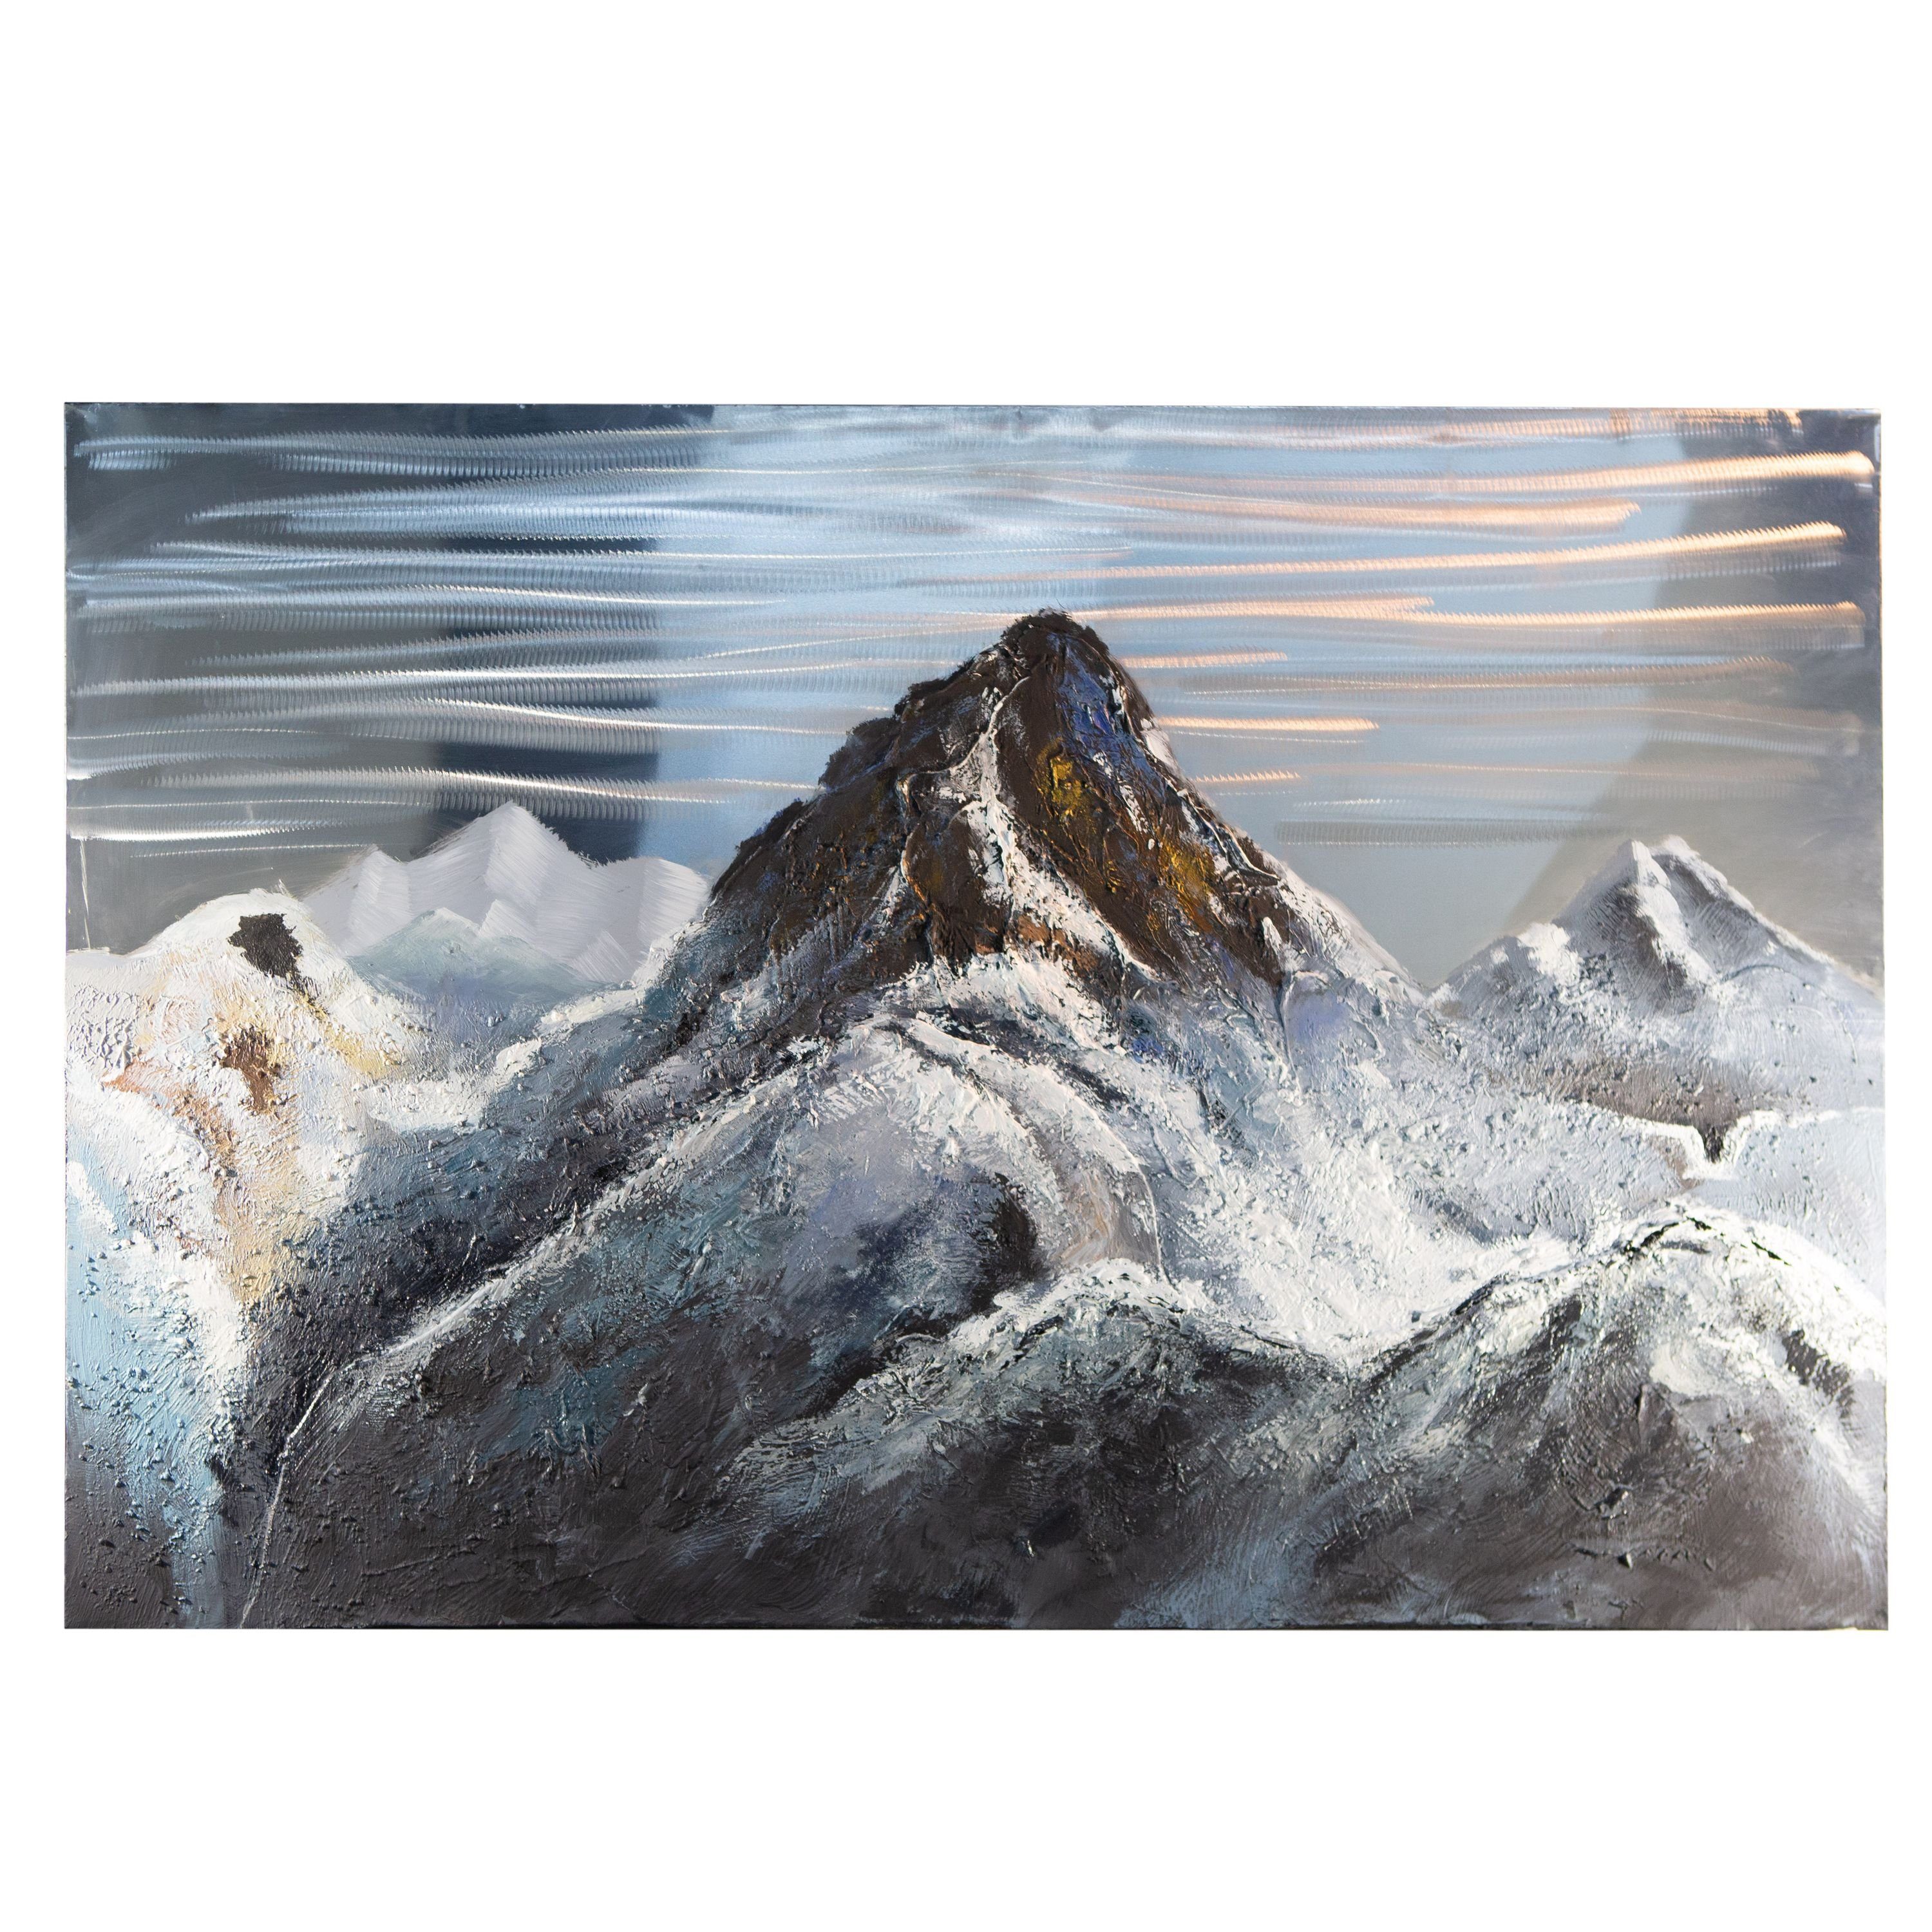 x 150cm B. grau-schwarz - - GILDE Mountain 3D 100cm GILDE Bild Bild H.